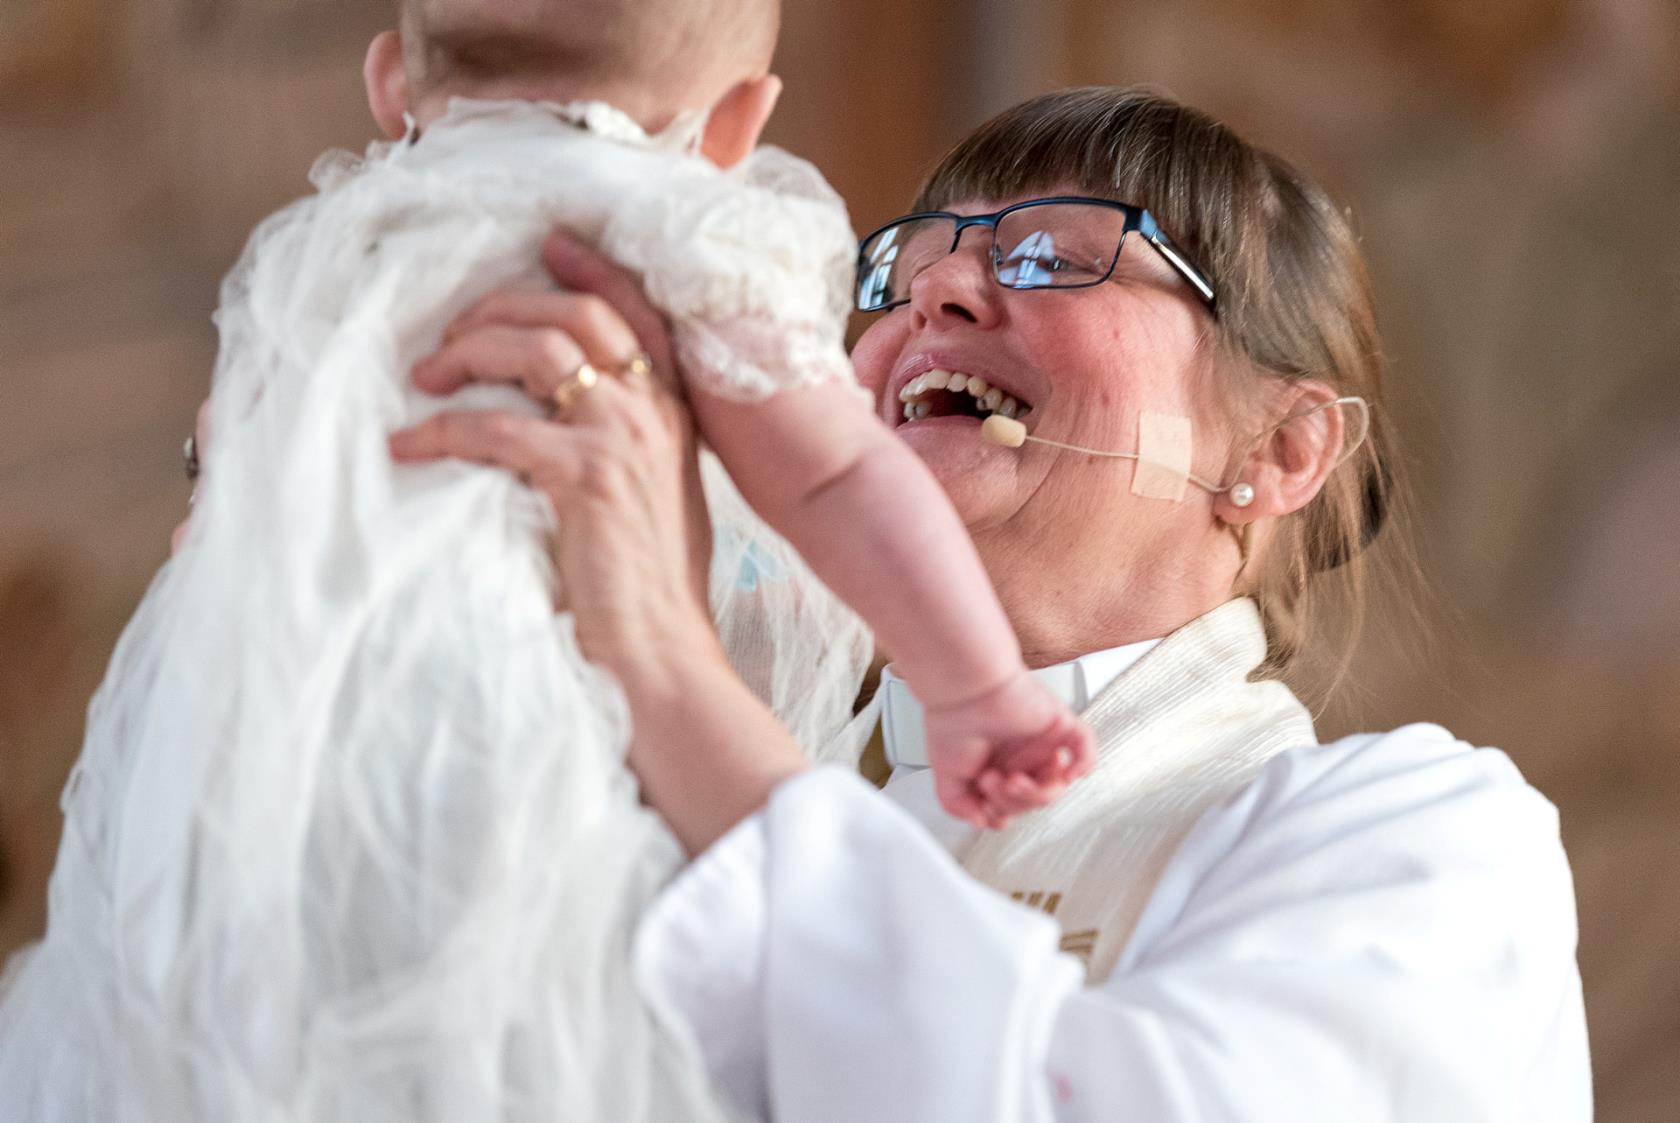 Kvinnlig präst håller leende upp ett dopbarn i luften.